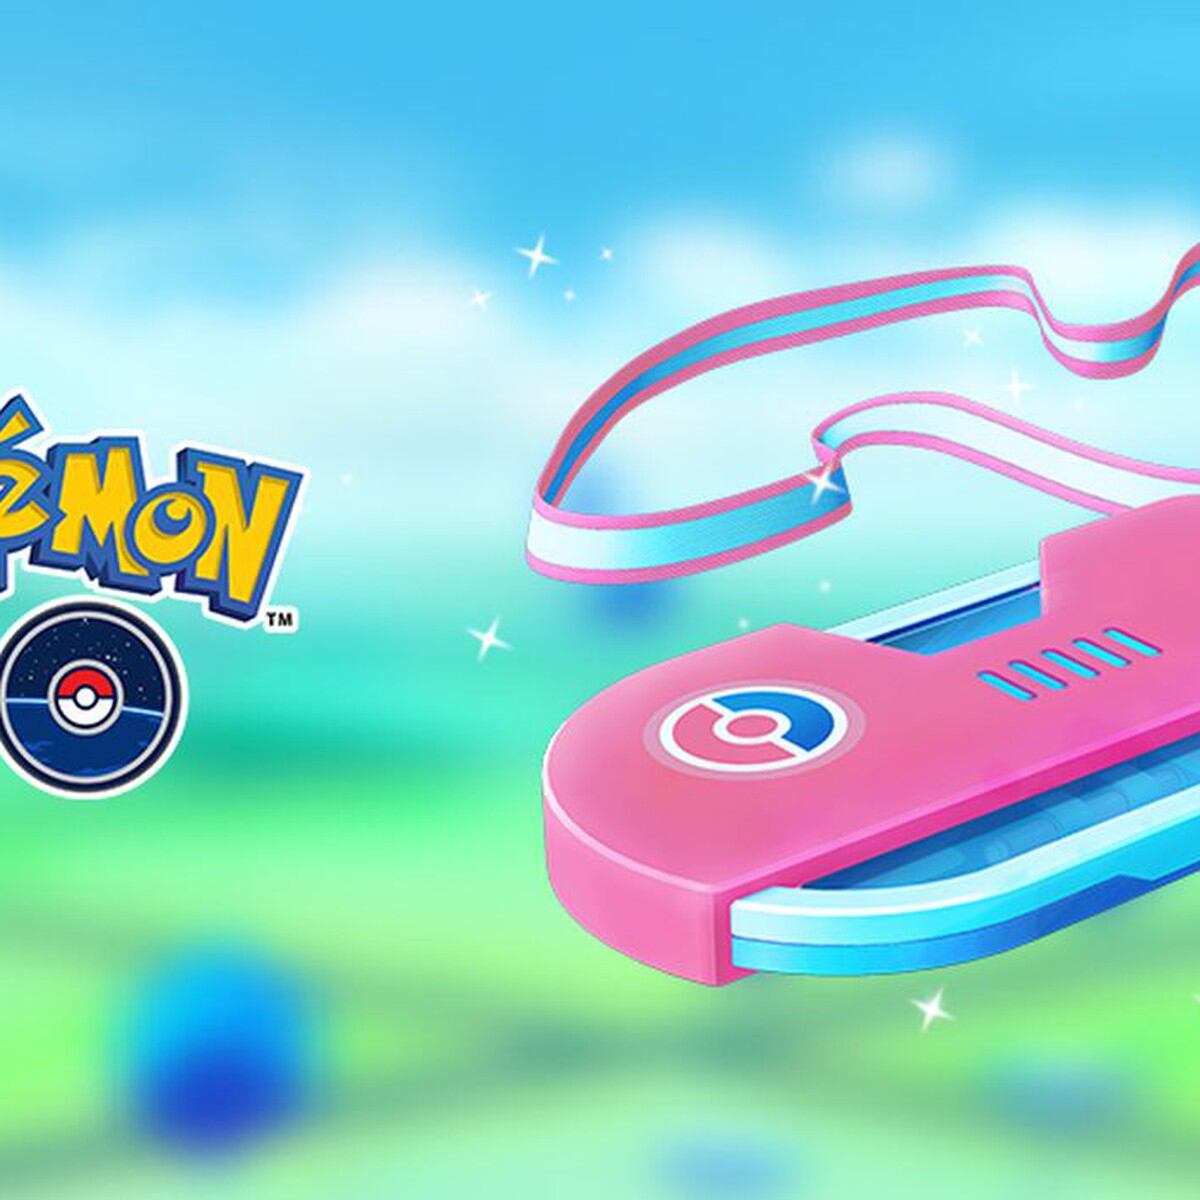 Pokémon GO: cómo derrotar a Regigigas en las Incursiones